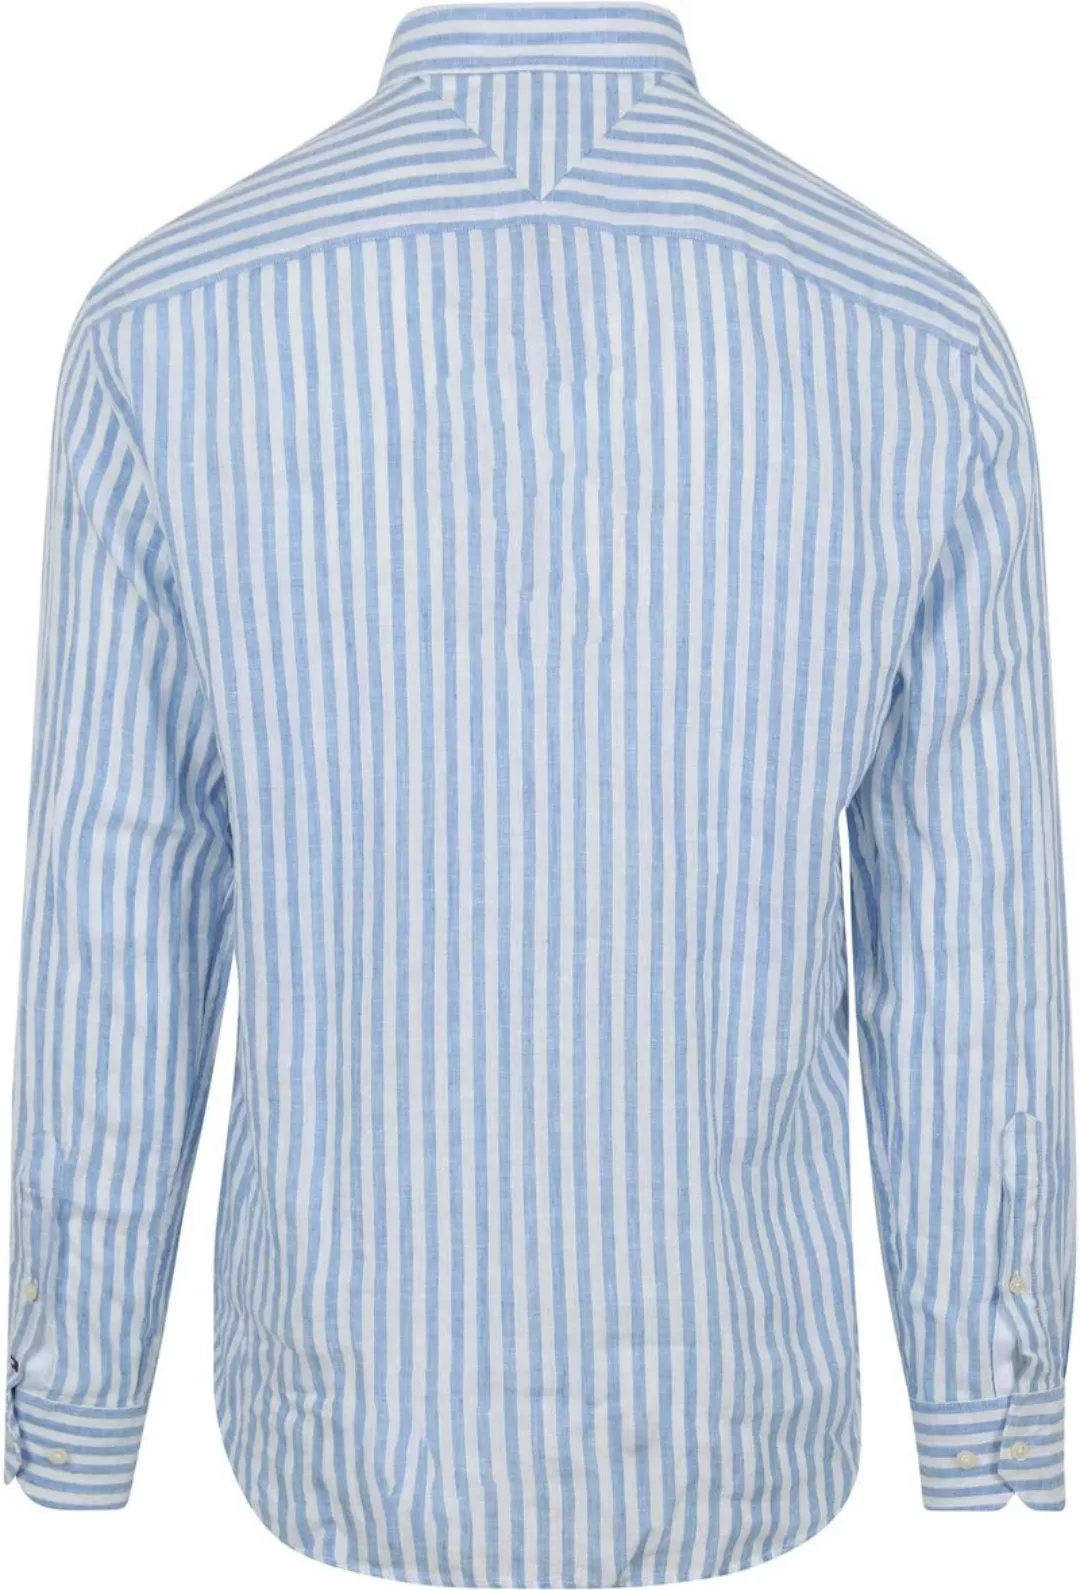 Tommy Hilfiger Hemd Leinen Streifen Hellblau - Größe L günstig online kaufen